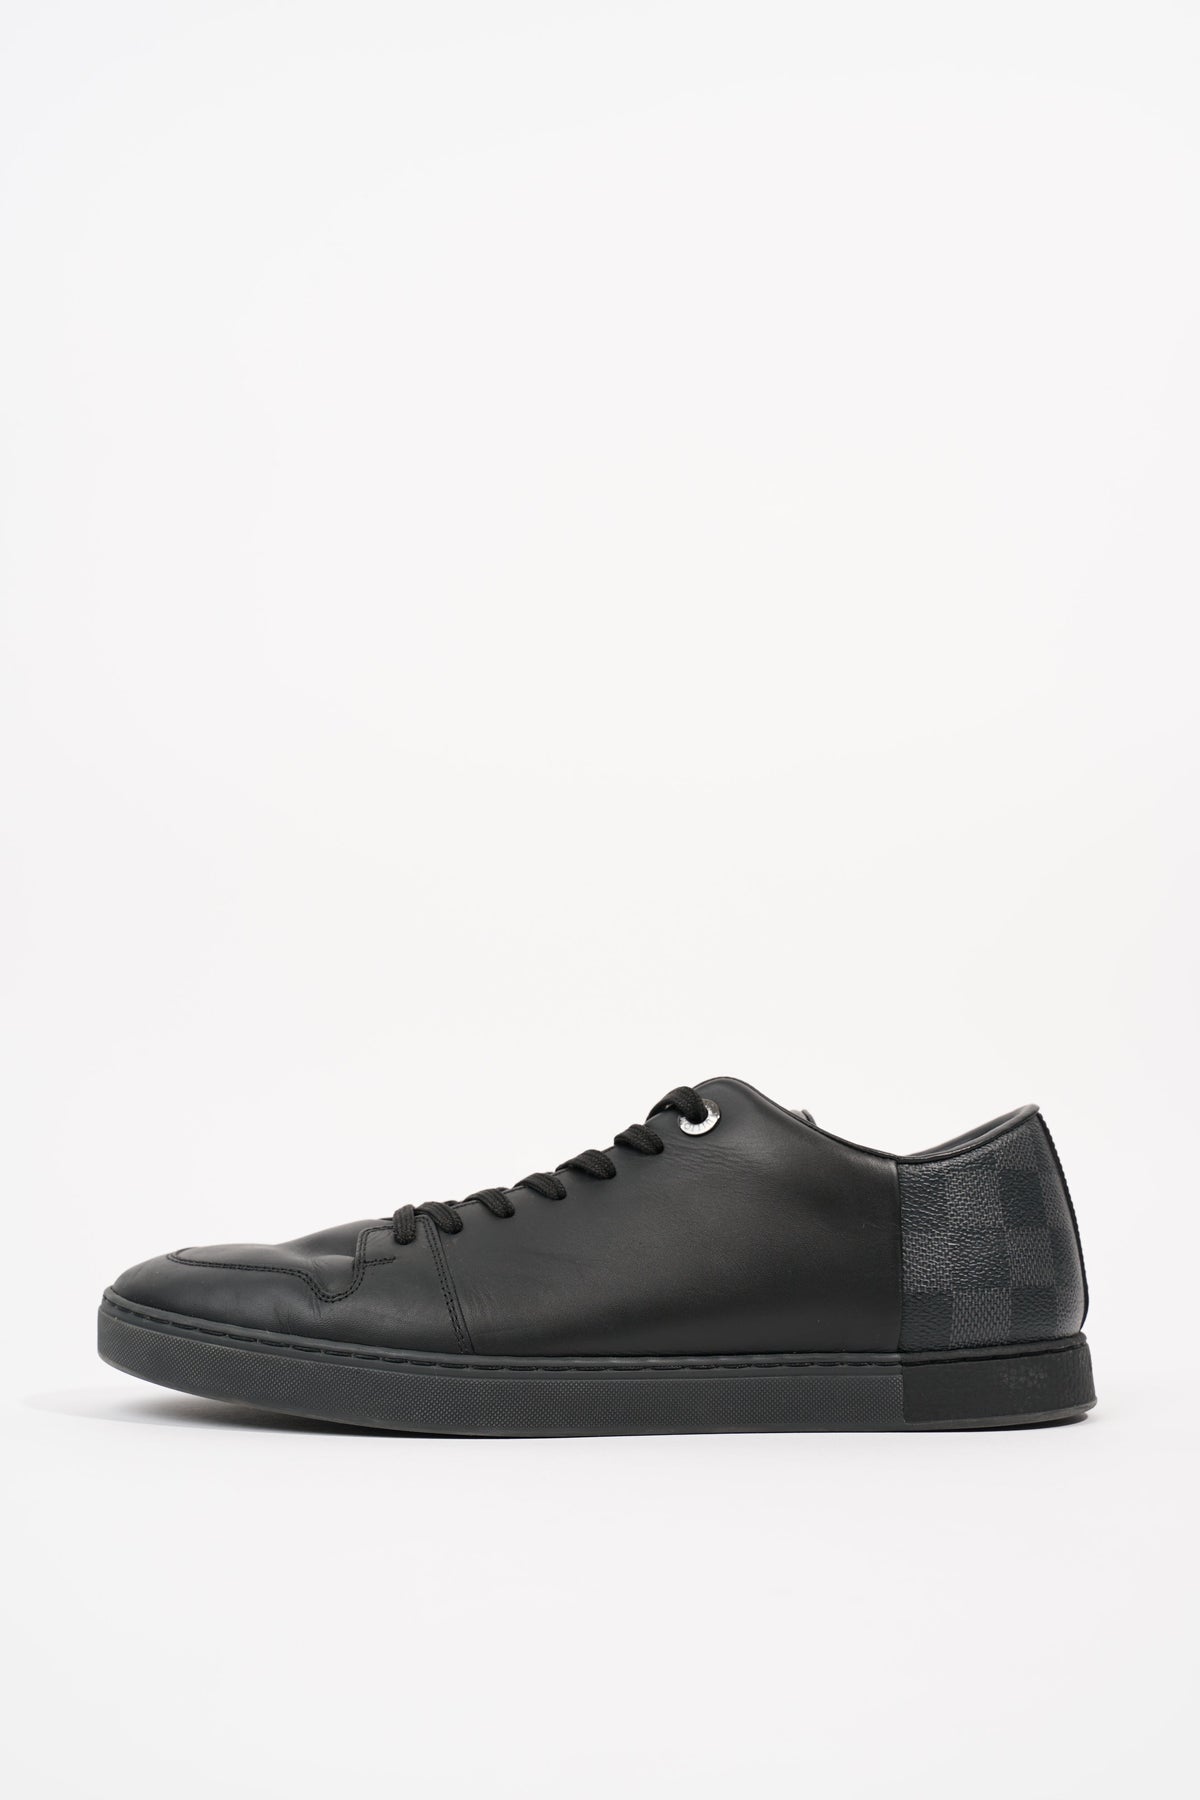 Louis Vuitton, Shoes, Louis Vuitton Damier Low Top Mens Sneaker